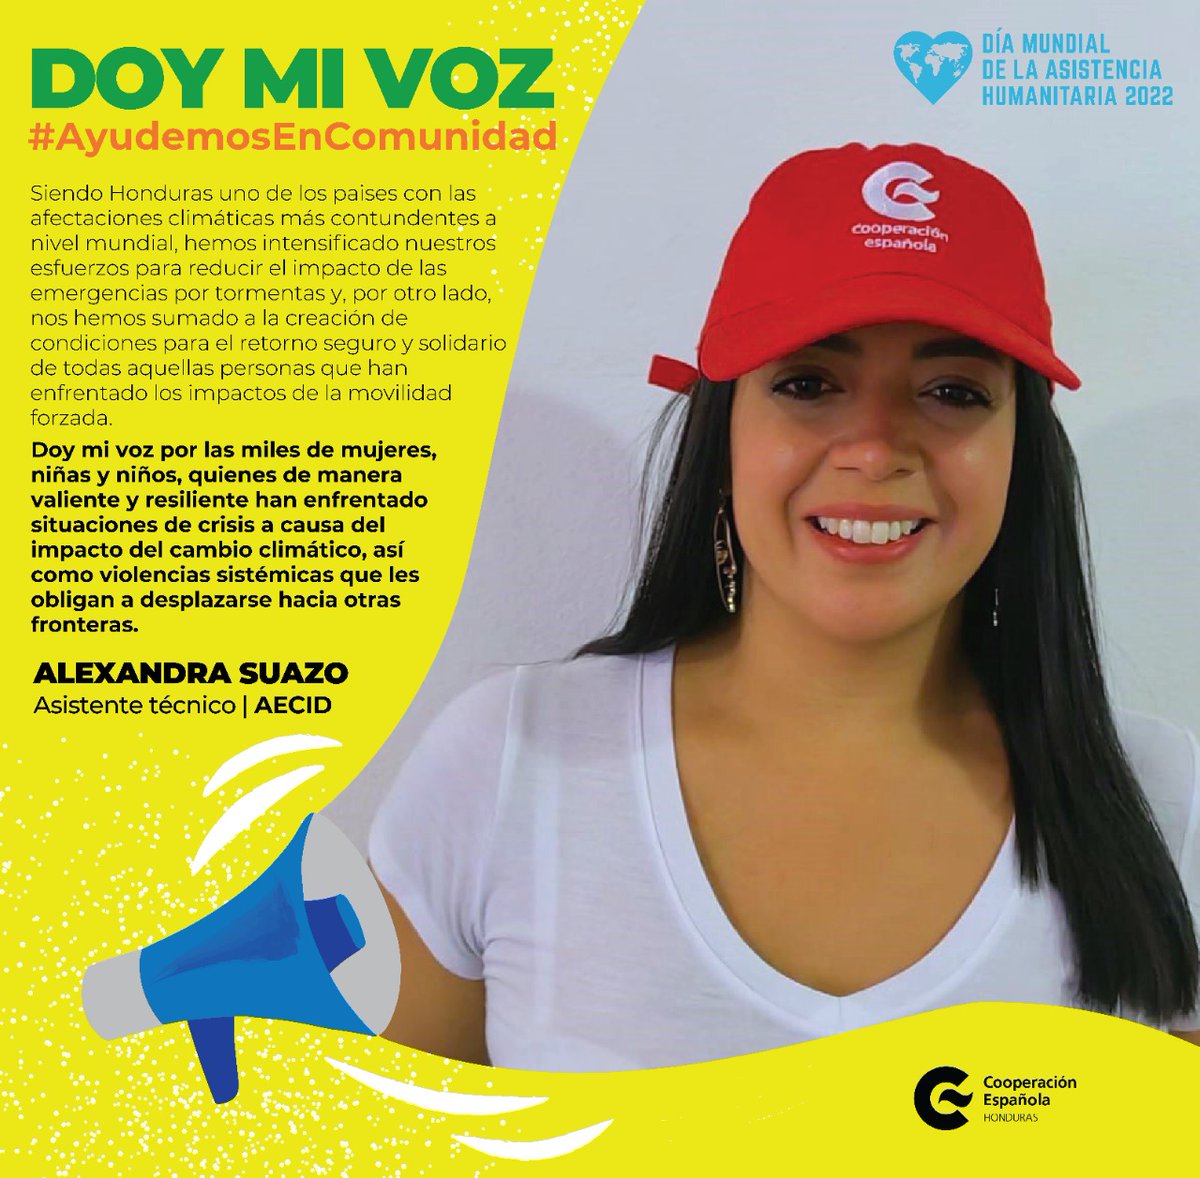 #DoyMiVoz
Alexandra, AT del Programa de Género y Desarrollo de @AECID_es en #Honduras, ha apoyado acciones orientadas a mitigar las crisis humanitarias desde un enfoque de ddhh y de género🟣
#AyudemosEnComunidad #DiaDeAsistenciaHumanitaria #RedHumanitariaHN
#CooperacionFeminista